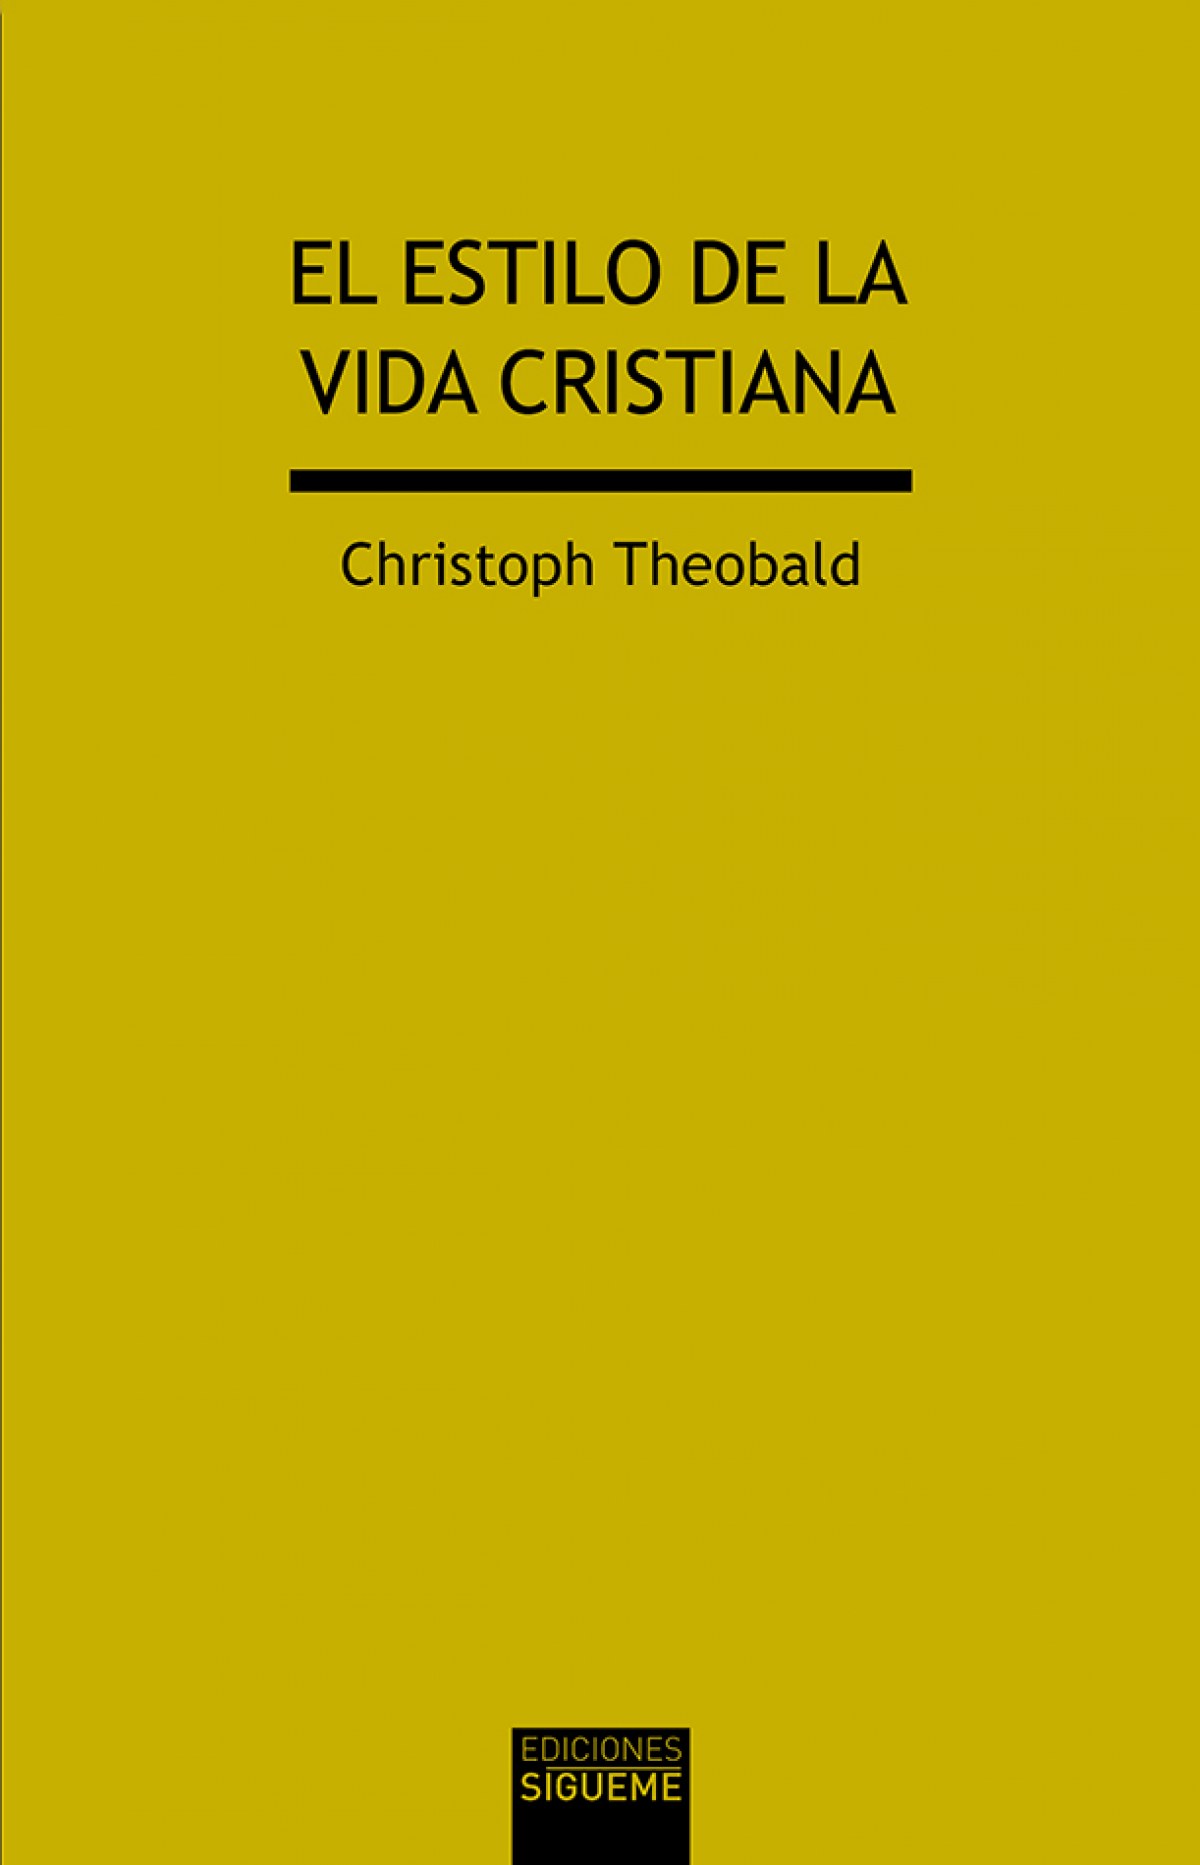 El estilo de la vida cristiana - Christoph Theobald